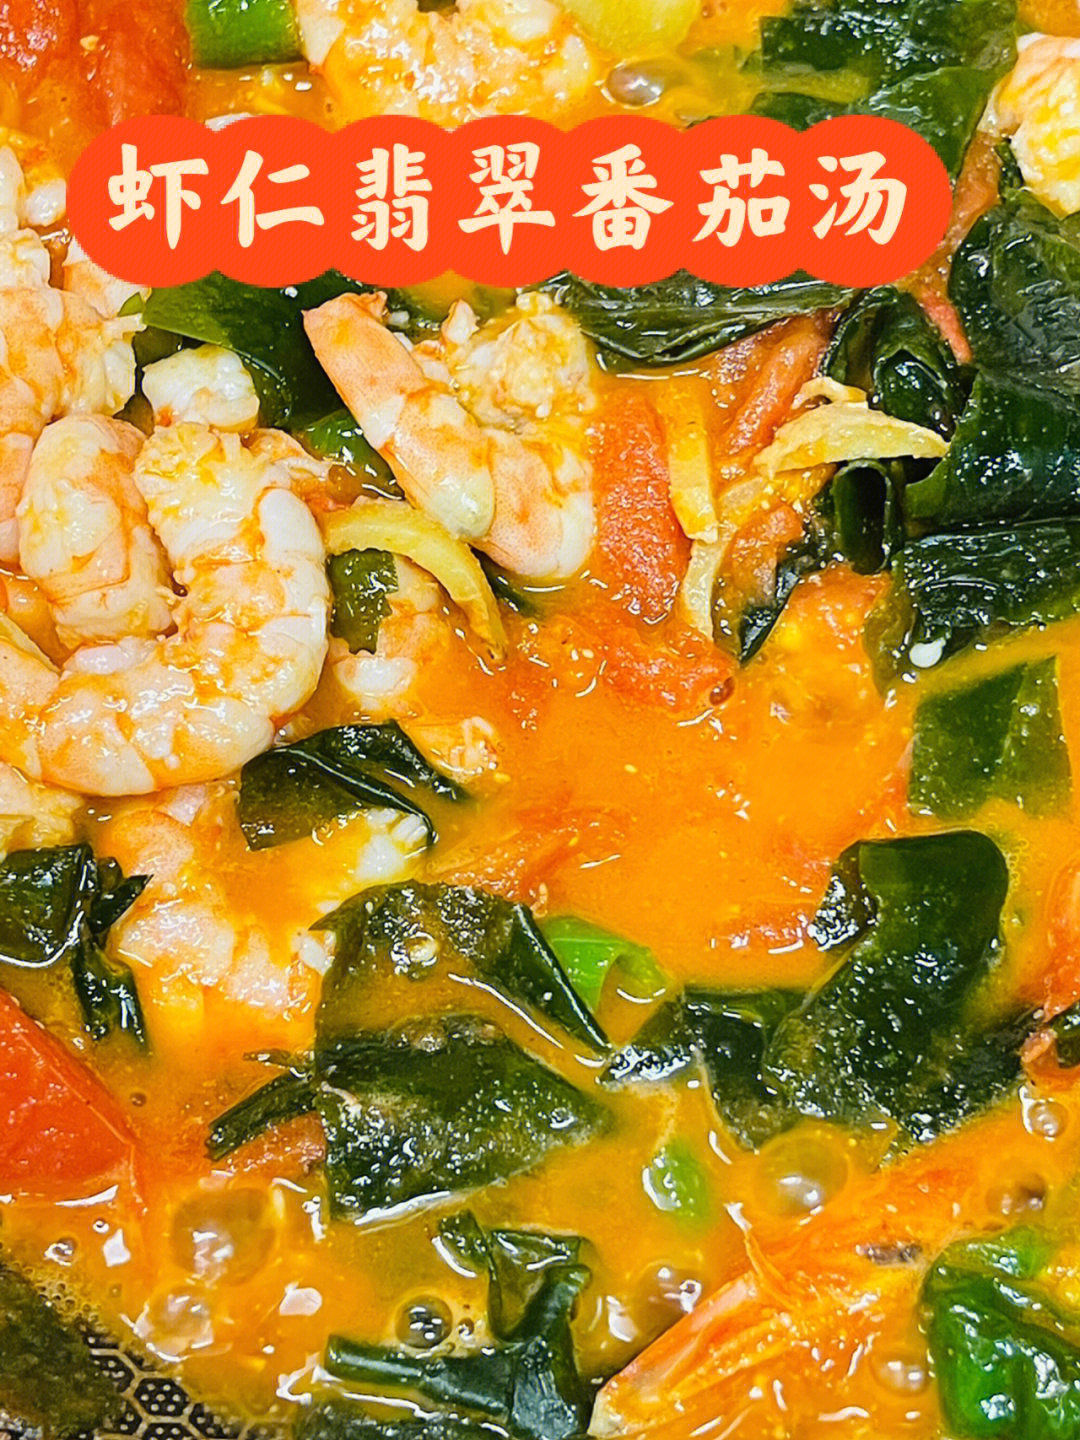 妈妈菜谱丨虾仁翡翠番茄豆腐汤